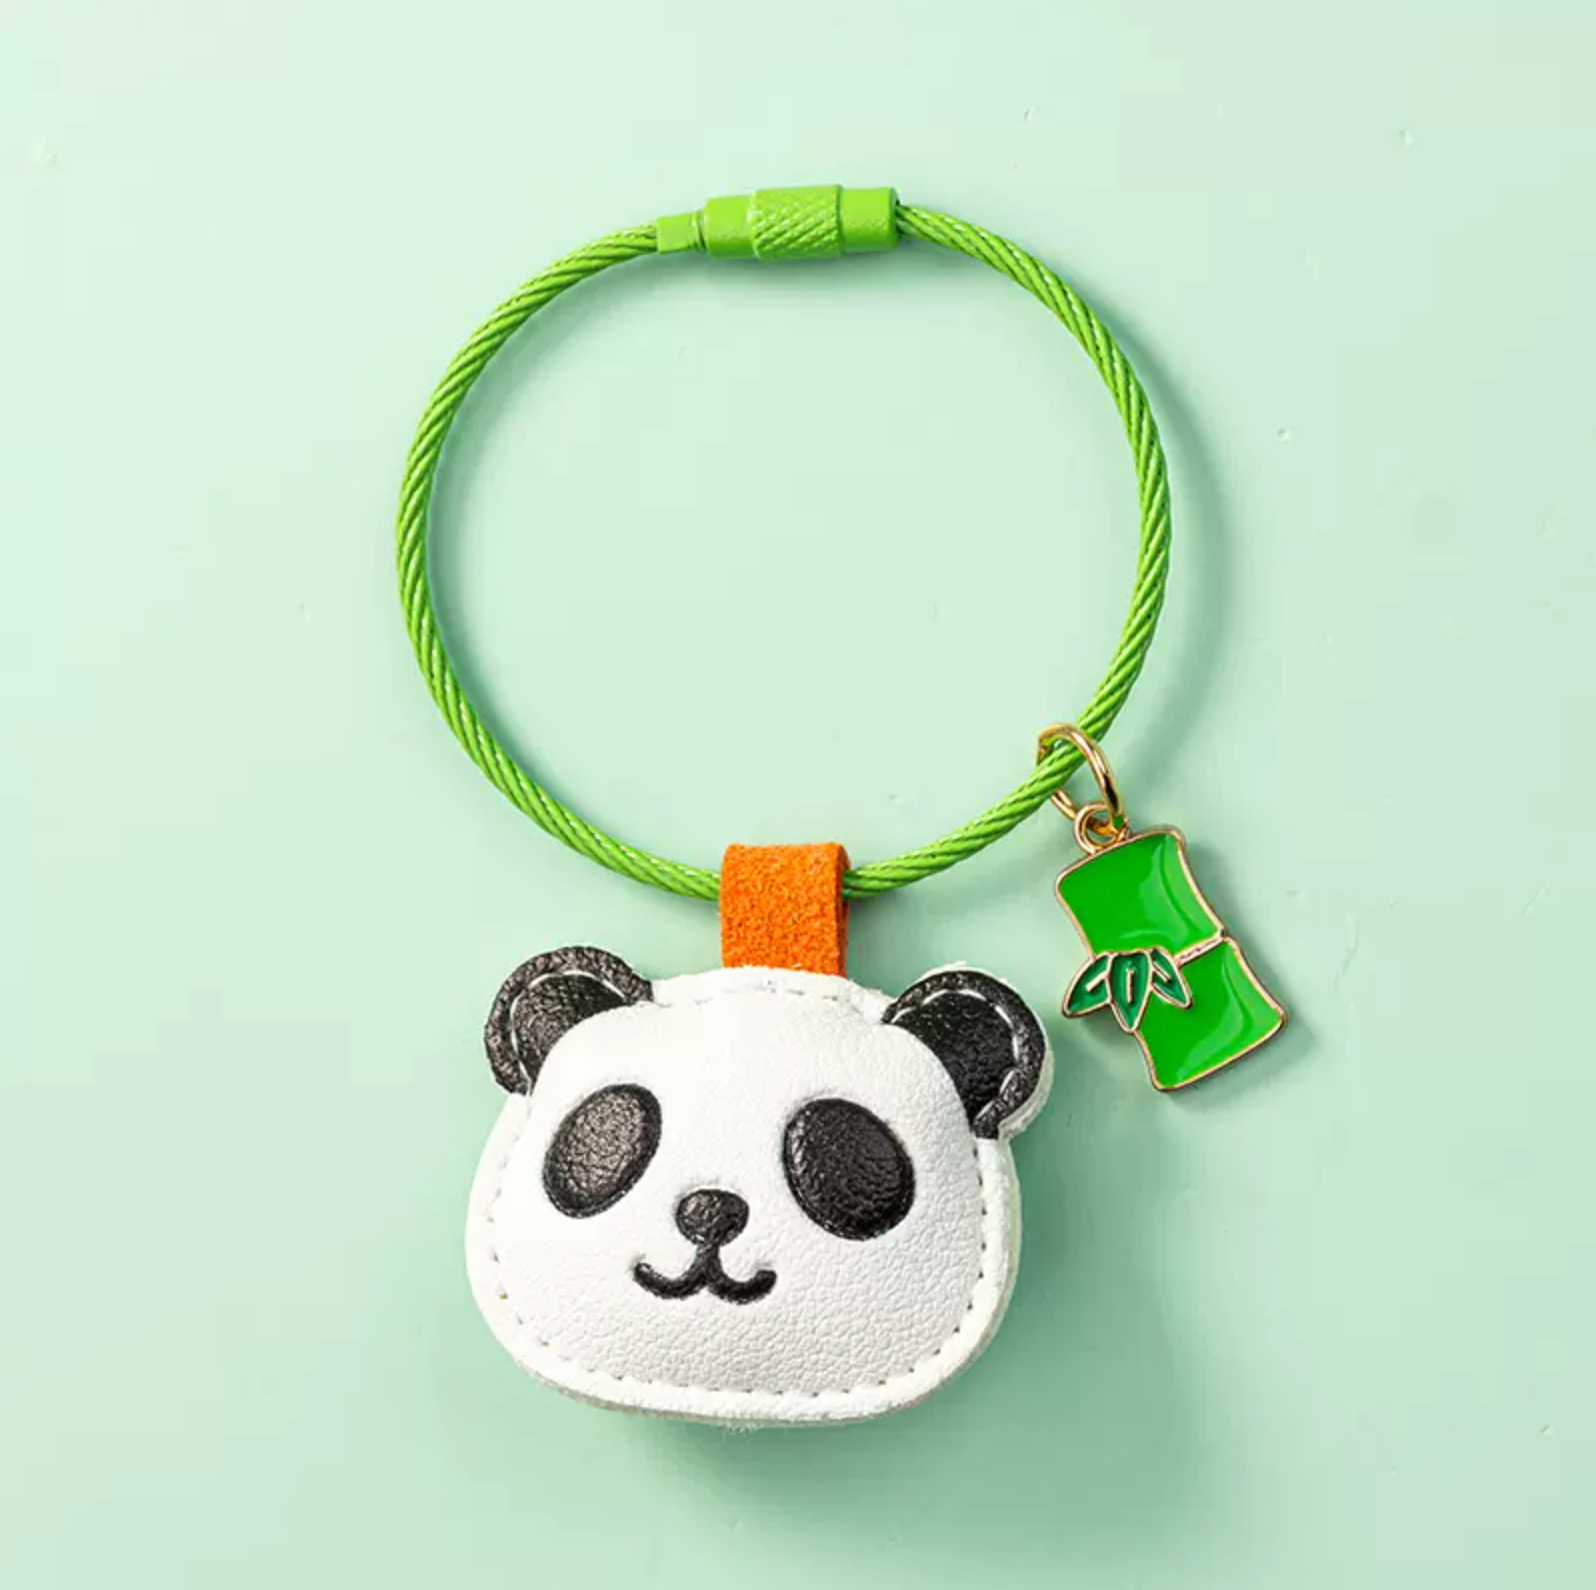 Panda and Bunny Animal Keychains